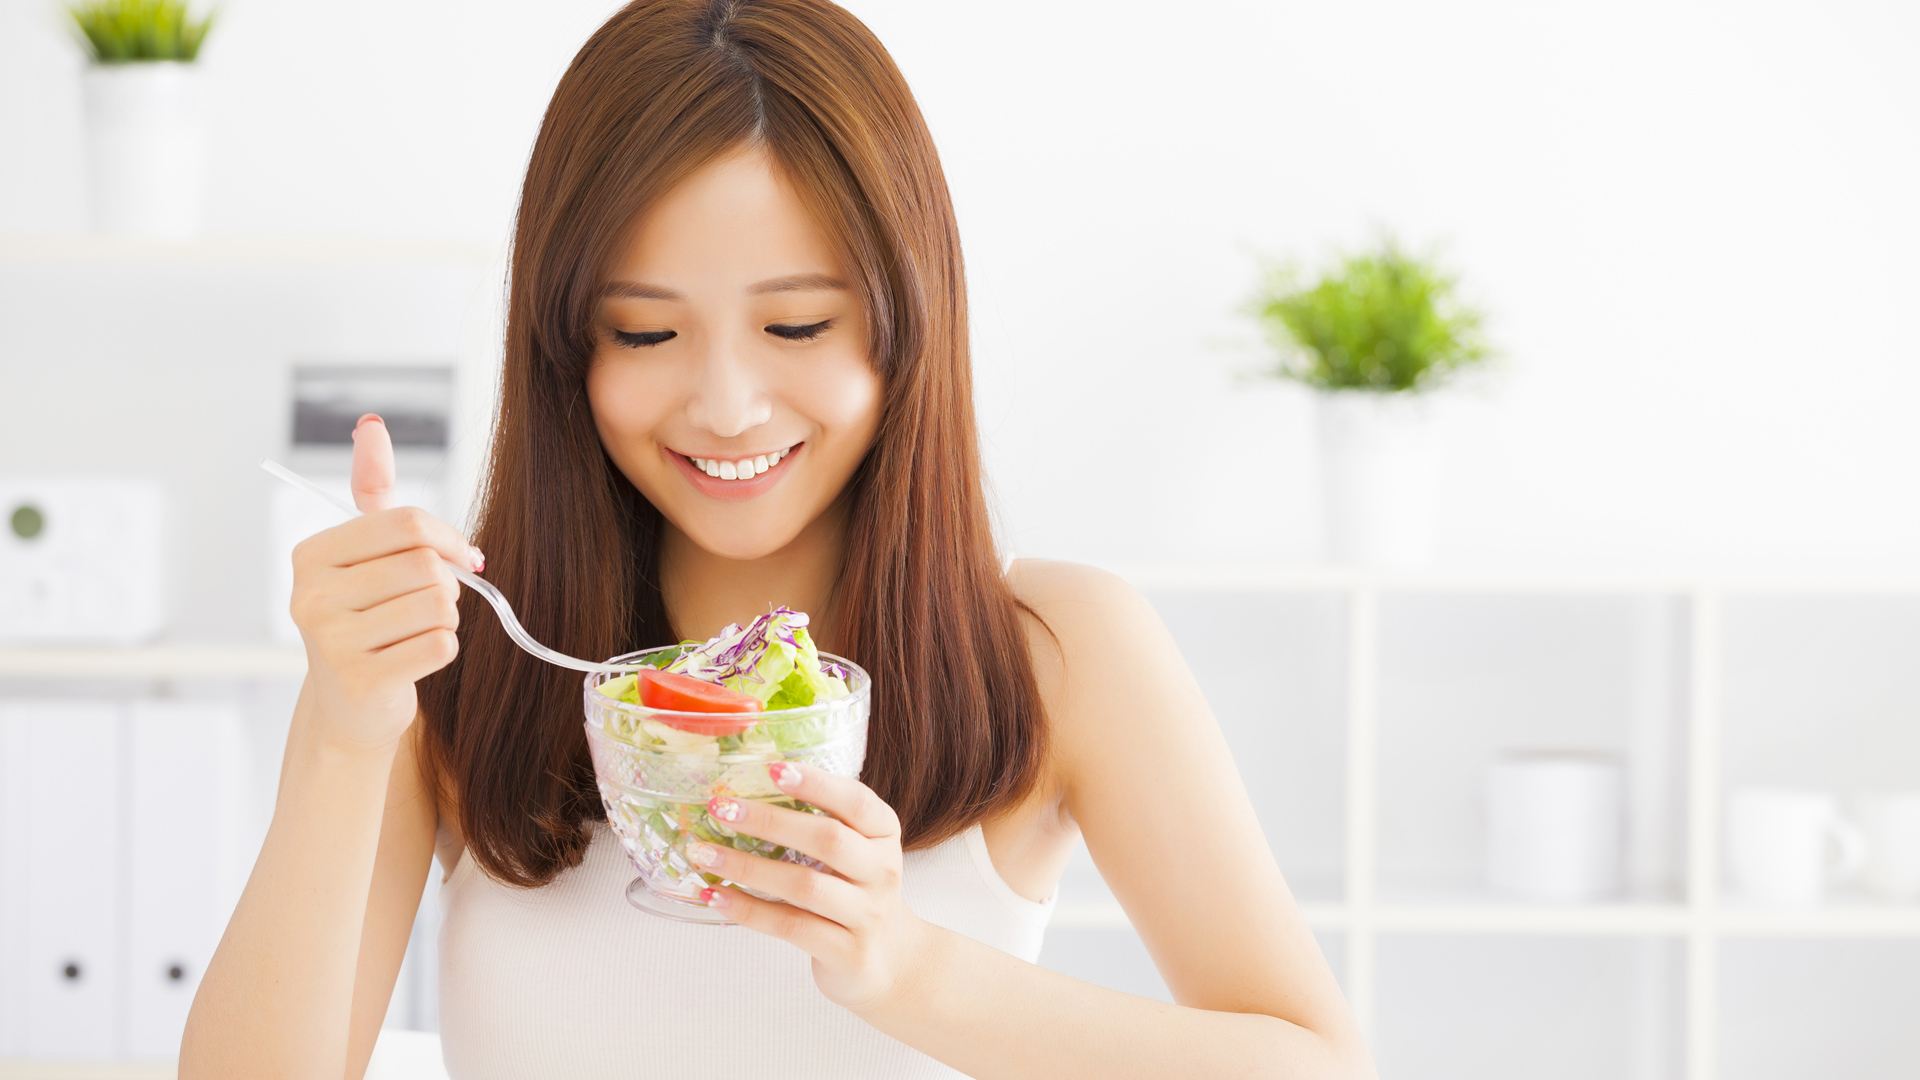  Ăn chay giảm cân, phương pháp vàng cho sức khỏe và môi trường